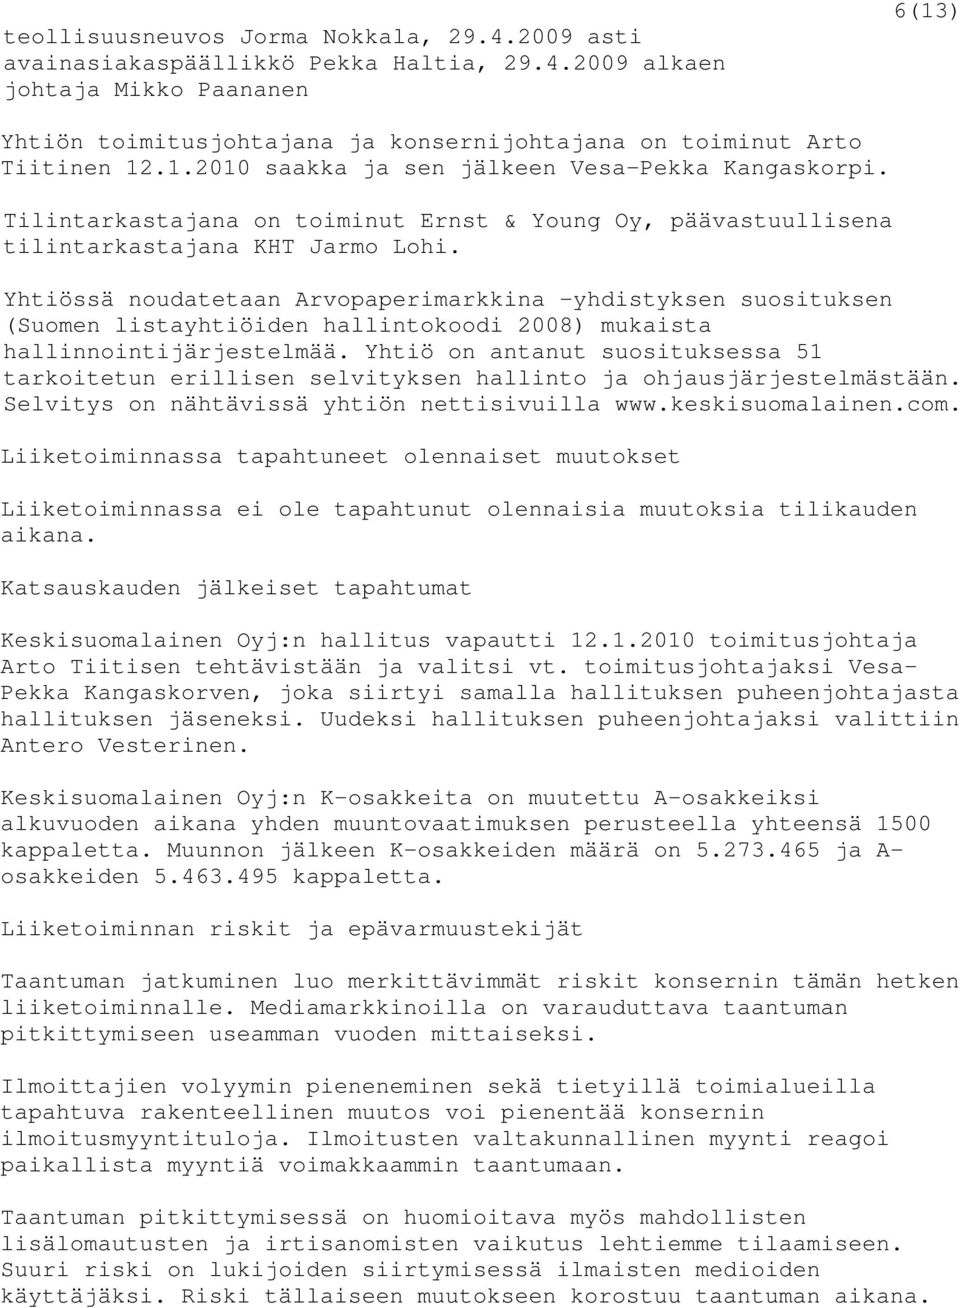 Yhtiössä noudatetaan Arvopaperimarkkina -yhdistyksen suosituksen (Suomen listayhtiöiden hallintokoodi 2008) mukaista hallinnointijärjestelmää.